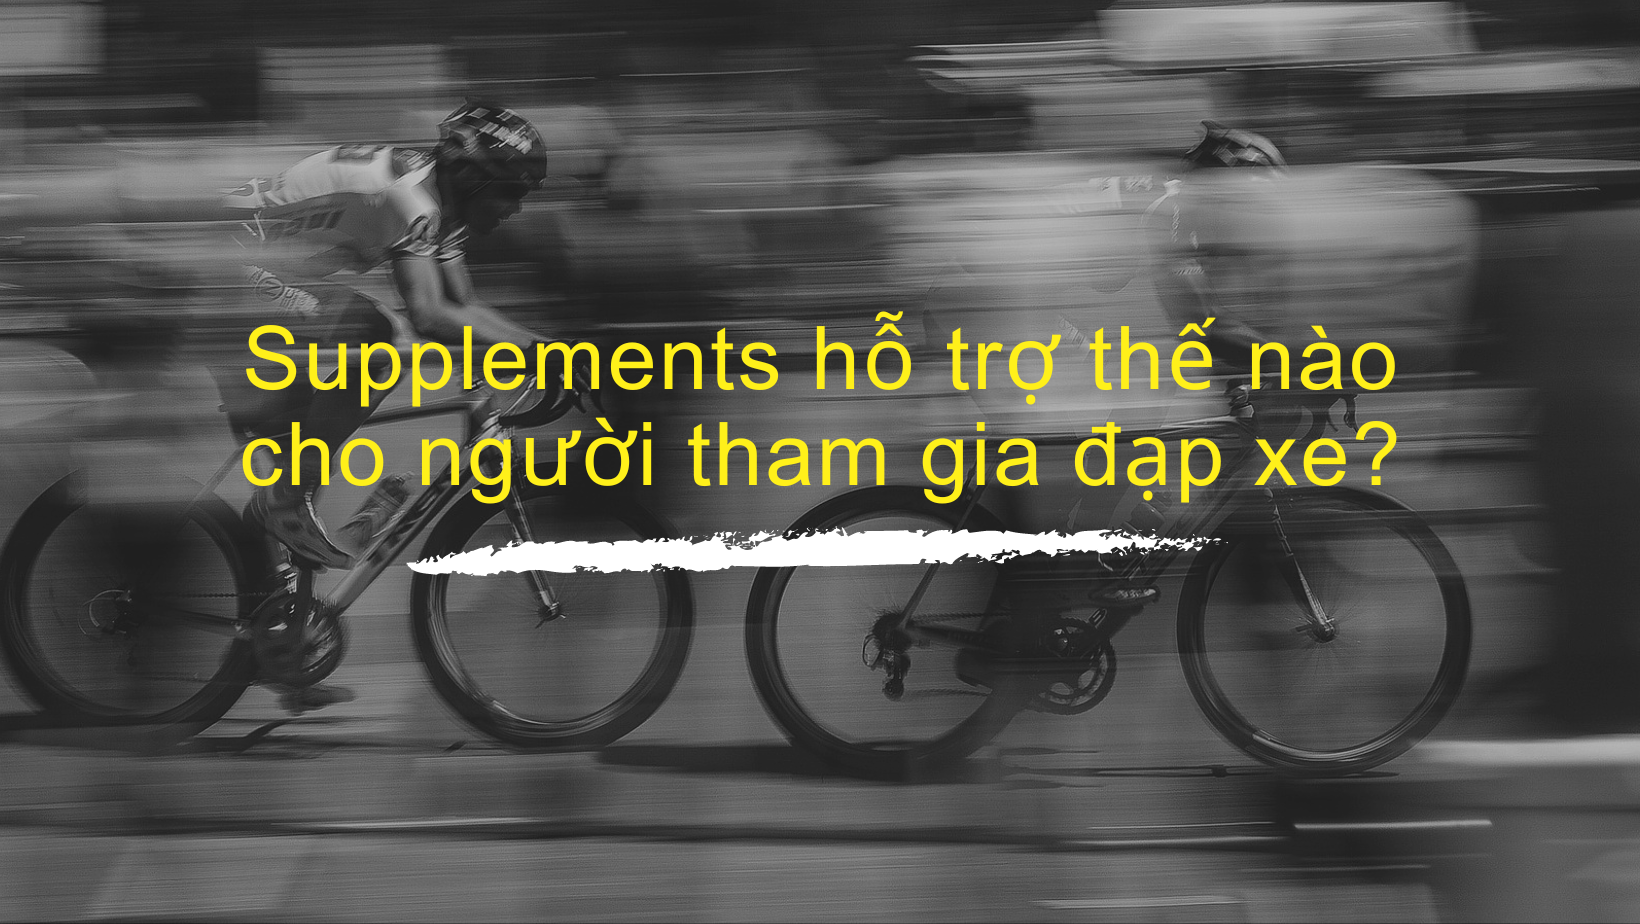 Thực phẩm Bổ sung (TPBS - Supplements) hỗ trợ thế nào cho người tham gia đạp xe?